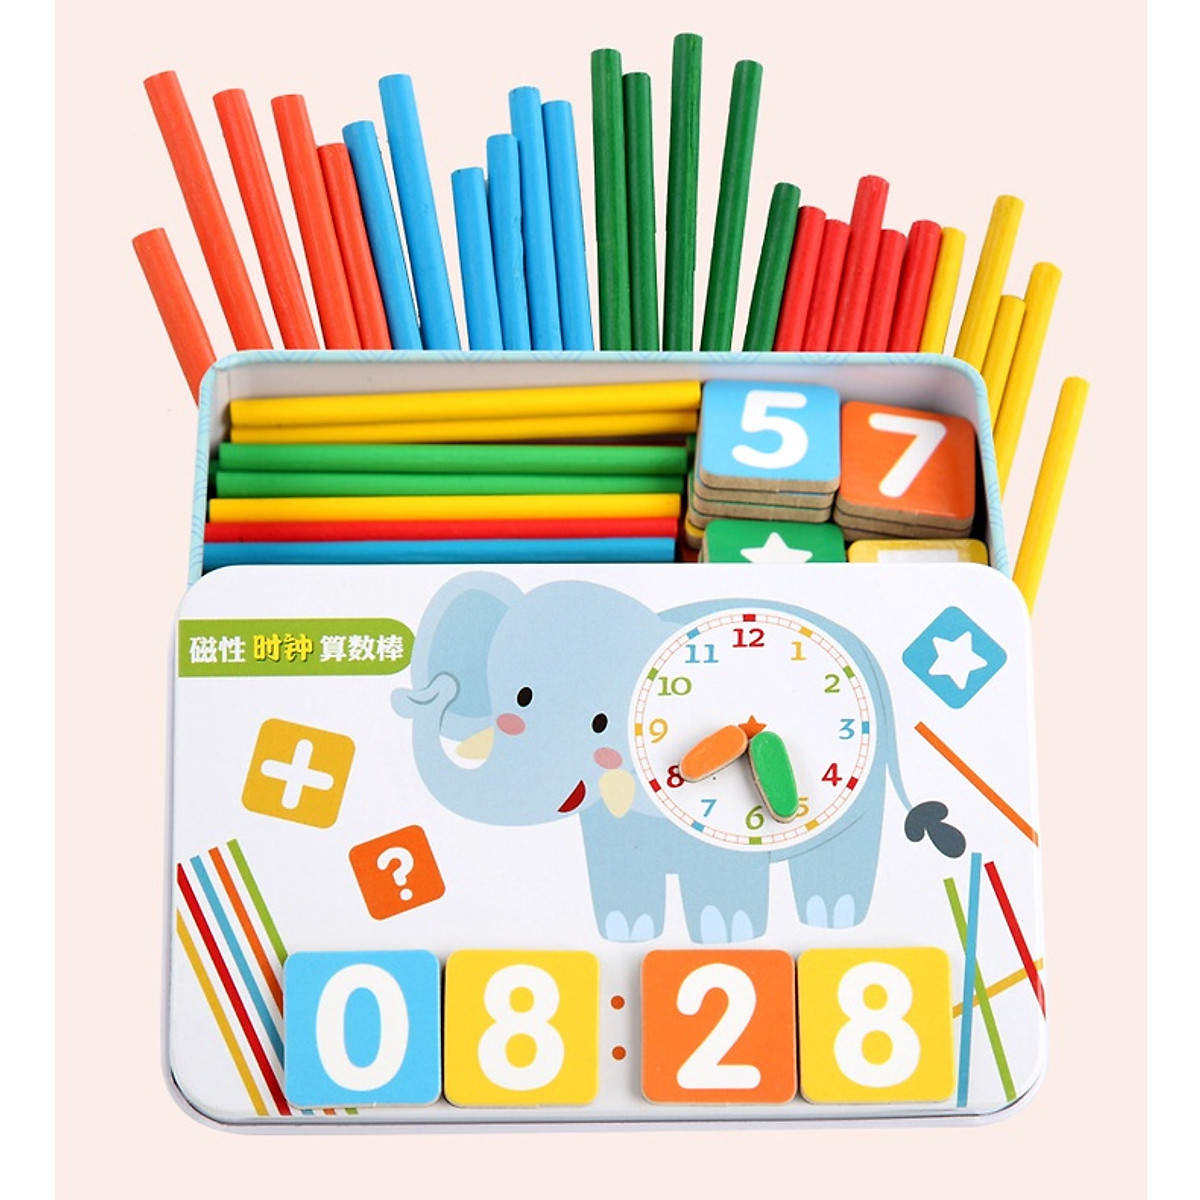 Hộp que tính học toán thông minh bằng gỗ nhiều màu sắc cho bé- Đồ chơi an toàn giúp bé phát triển trí tuệ